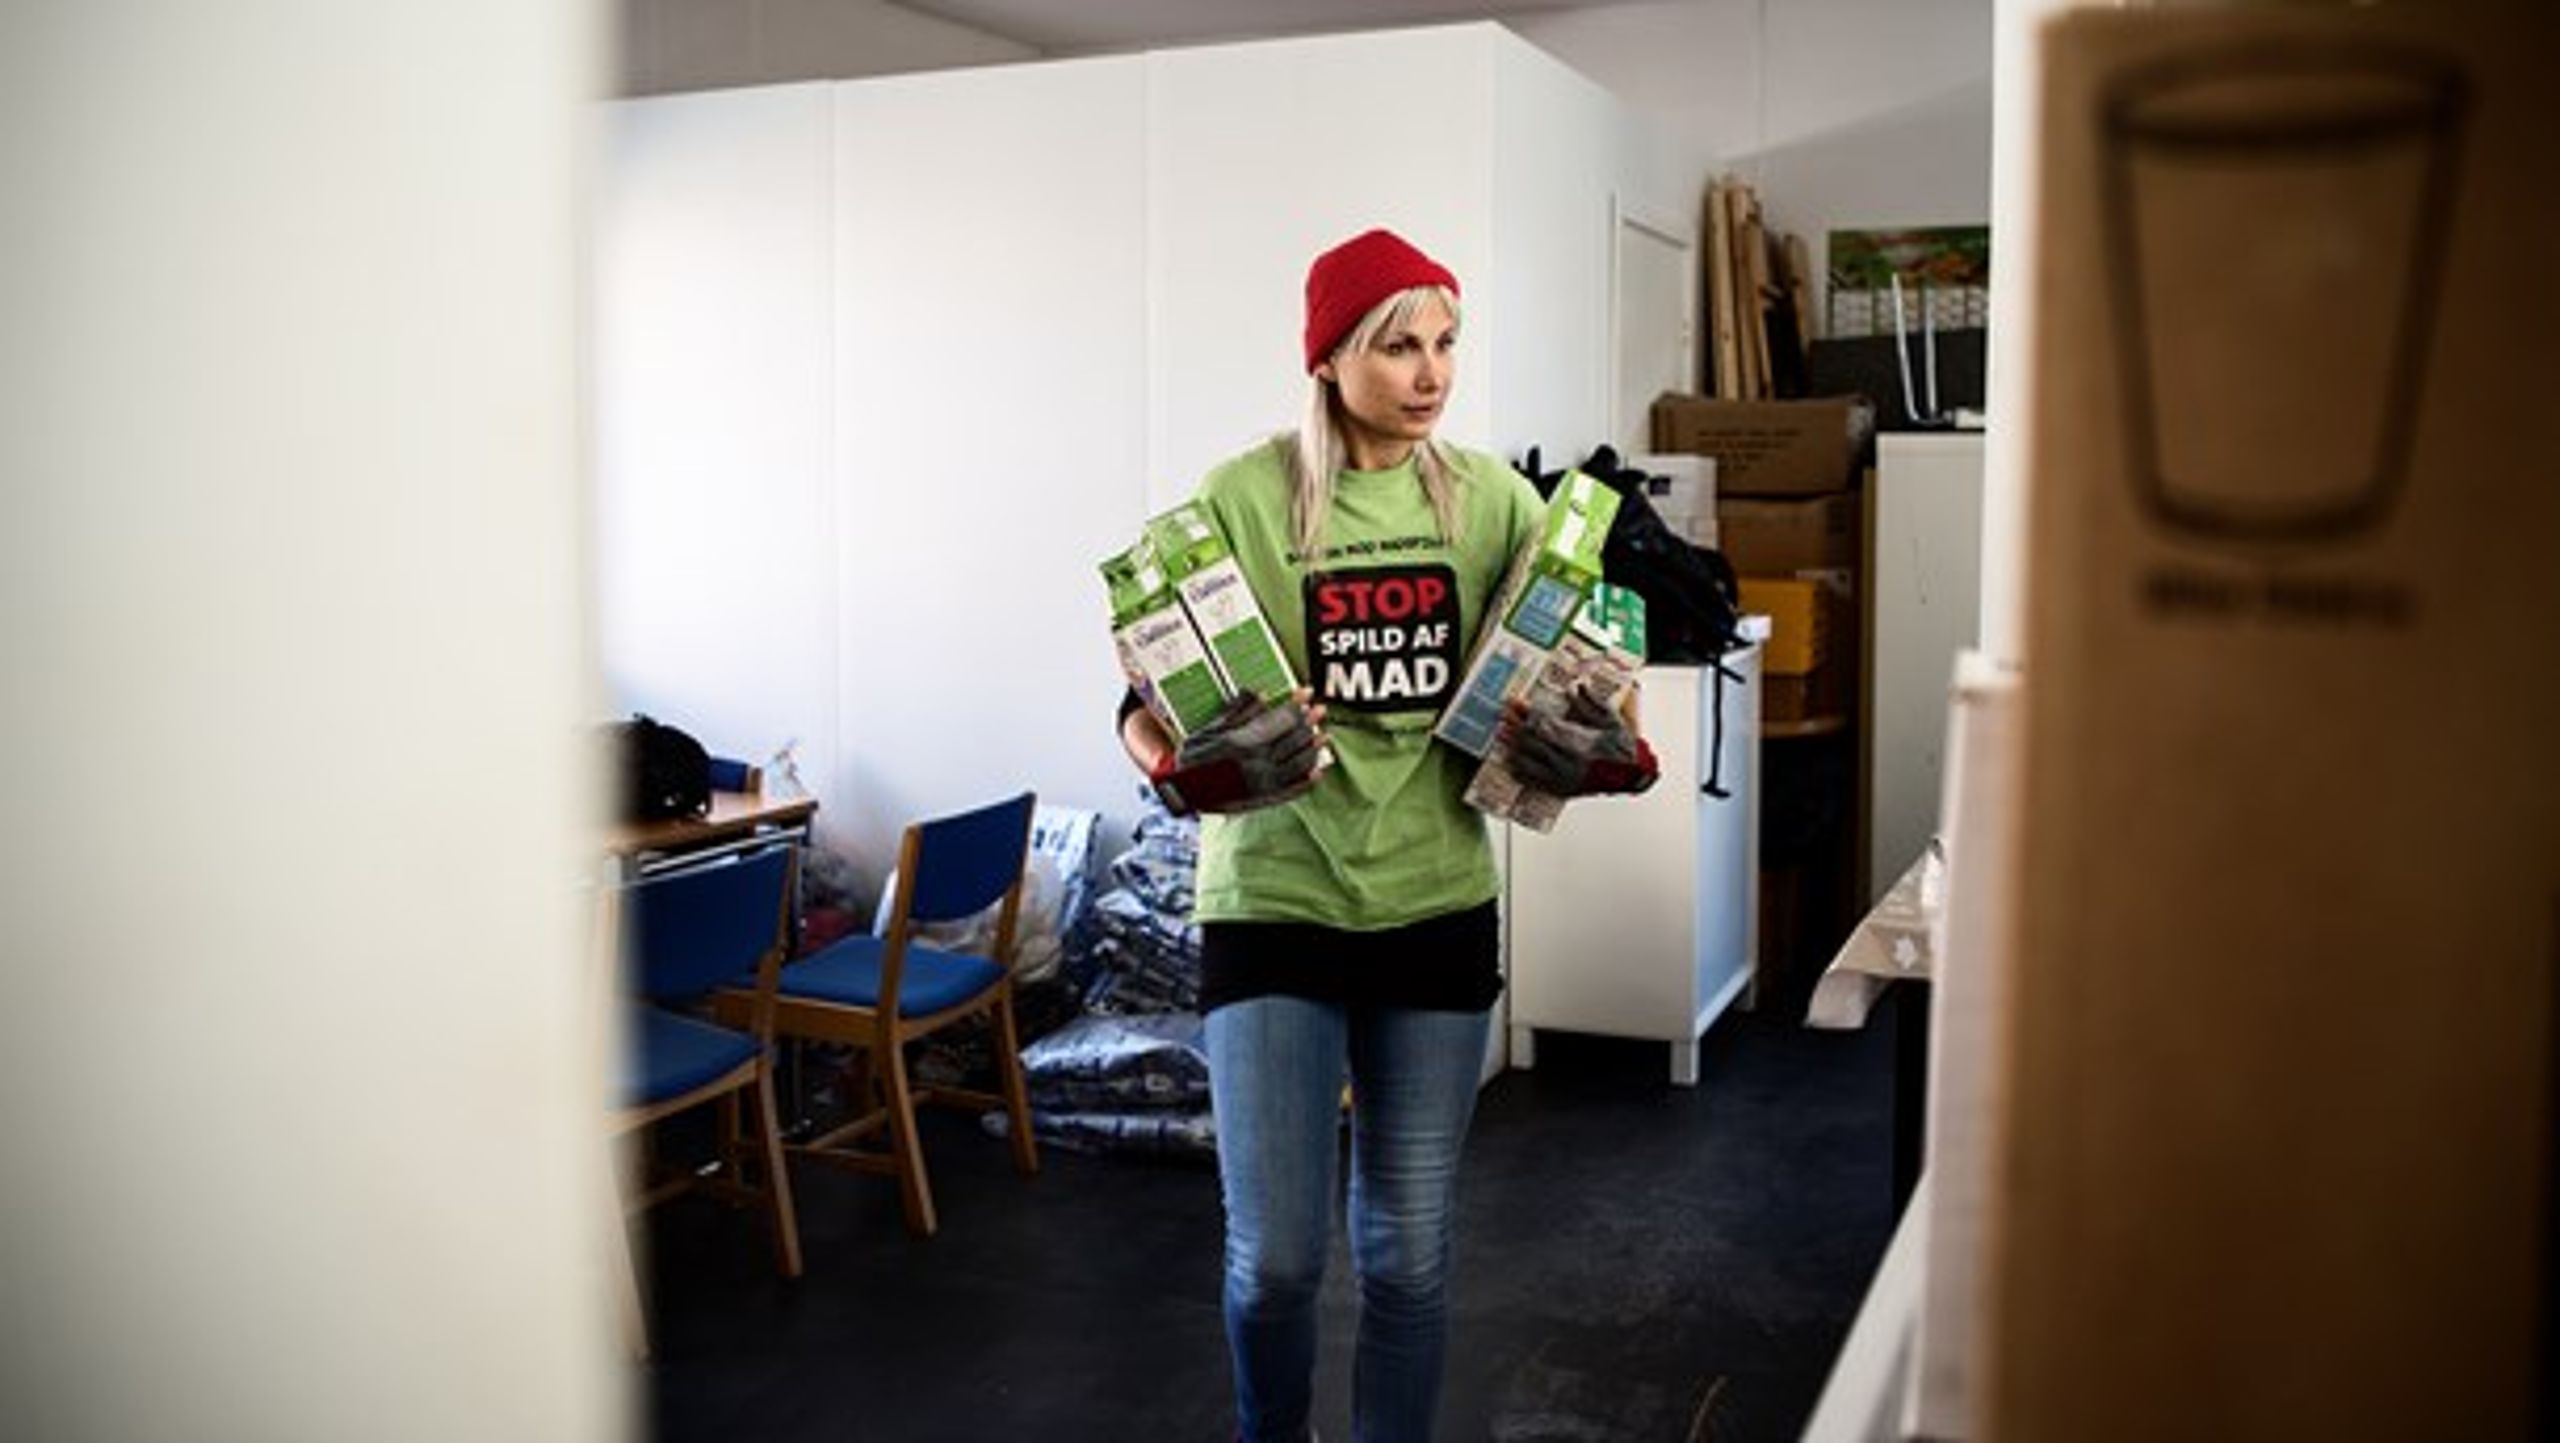 For 10 år siden stiftede Selina Juul bevægelsen Stop Spild af Mad, der kæmper mod madspild. (Arkivfoto).